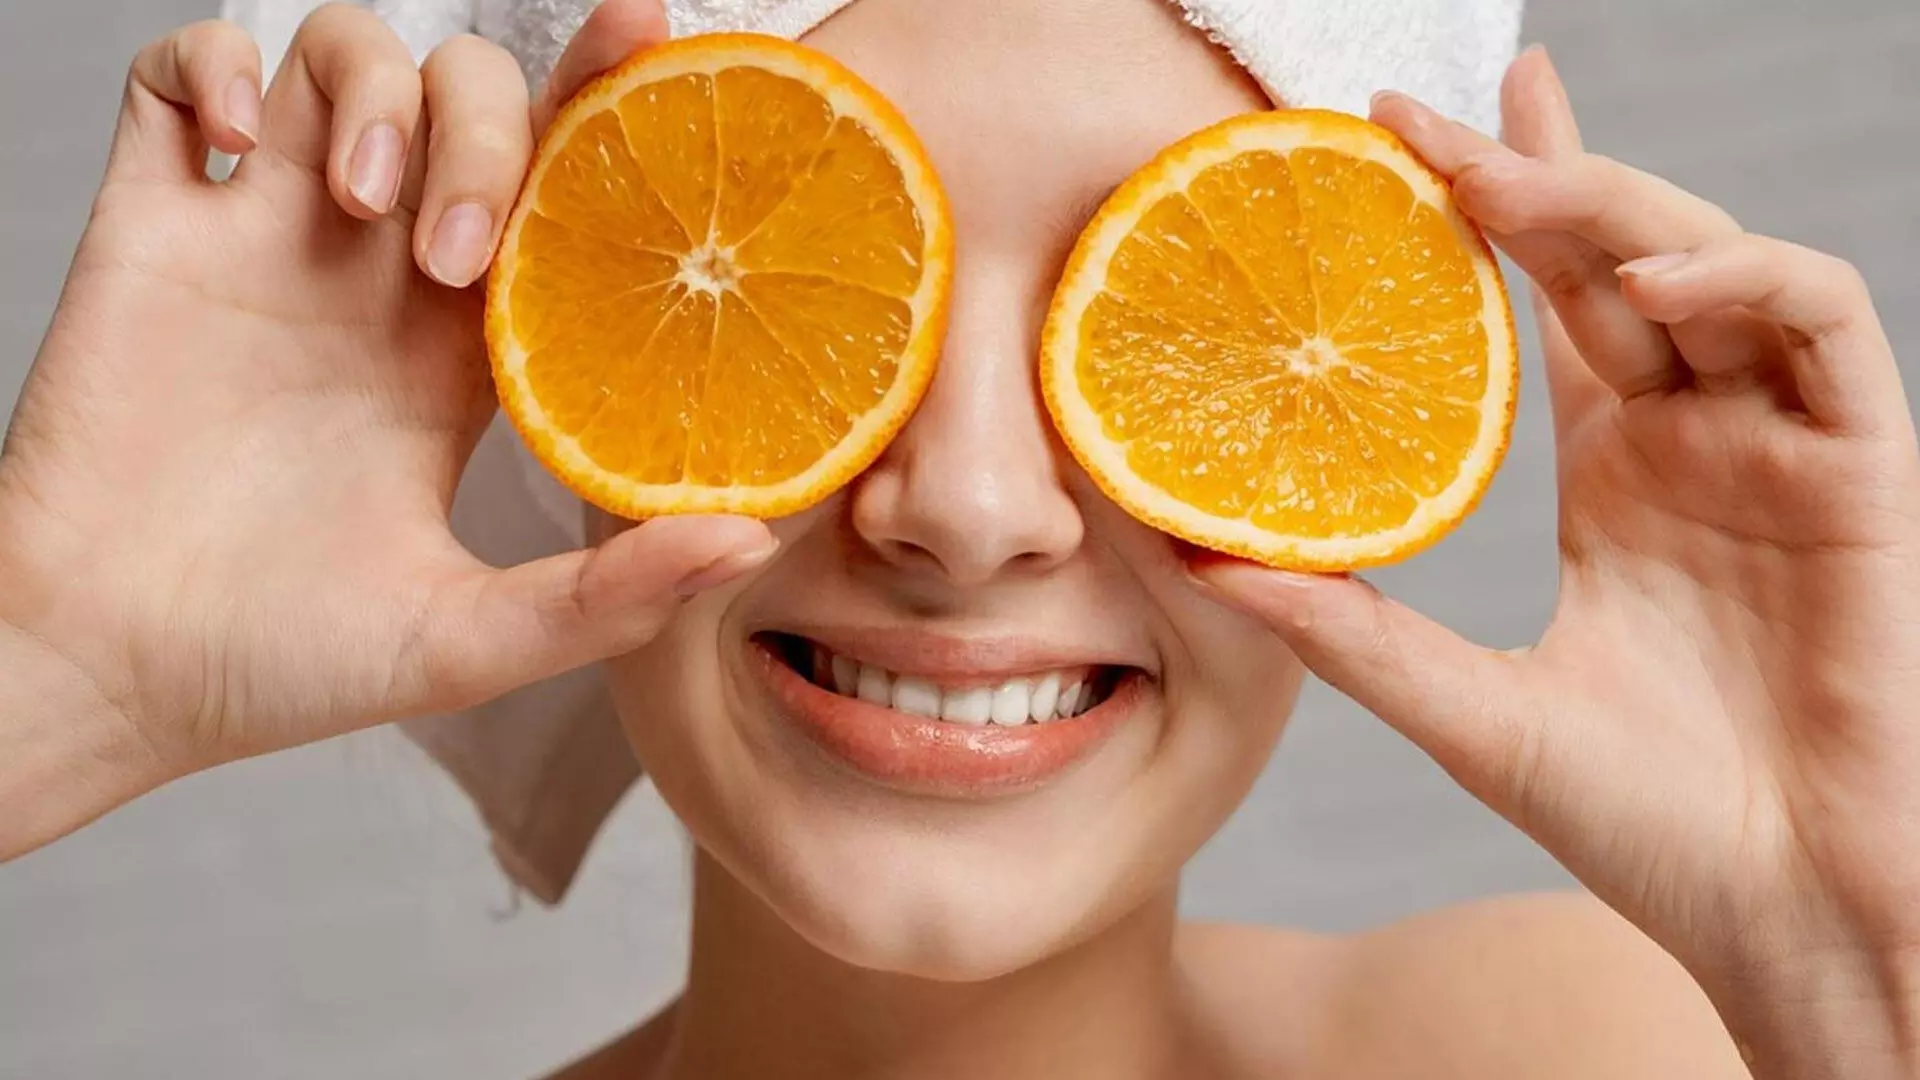 face mask: त्वचा को निखारने के लिए ट्राई करे संतरे के छिलके लें इस फैस मास्क की मदद